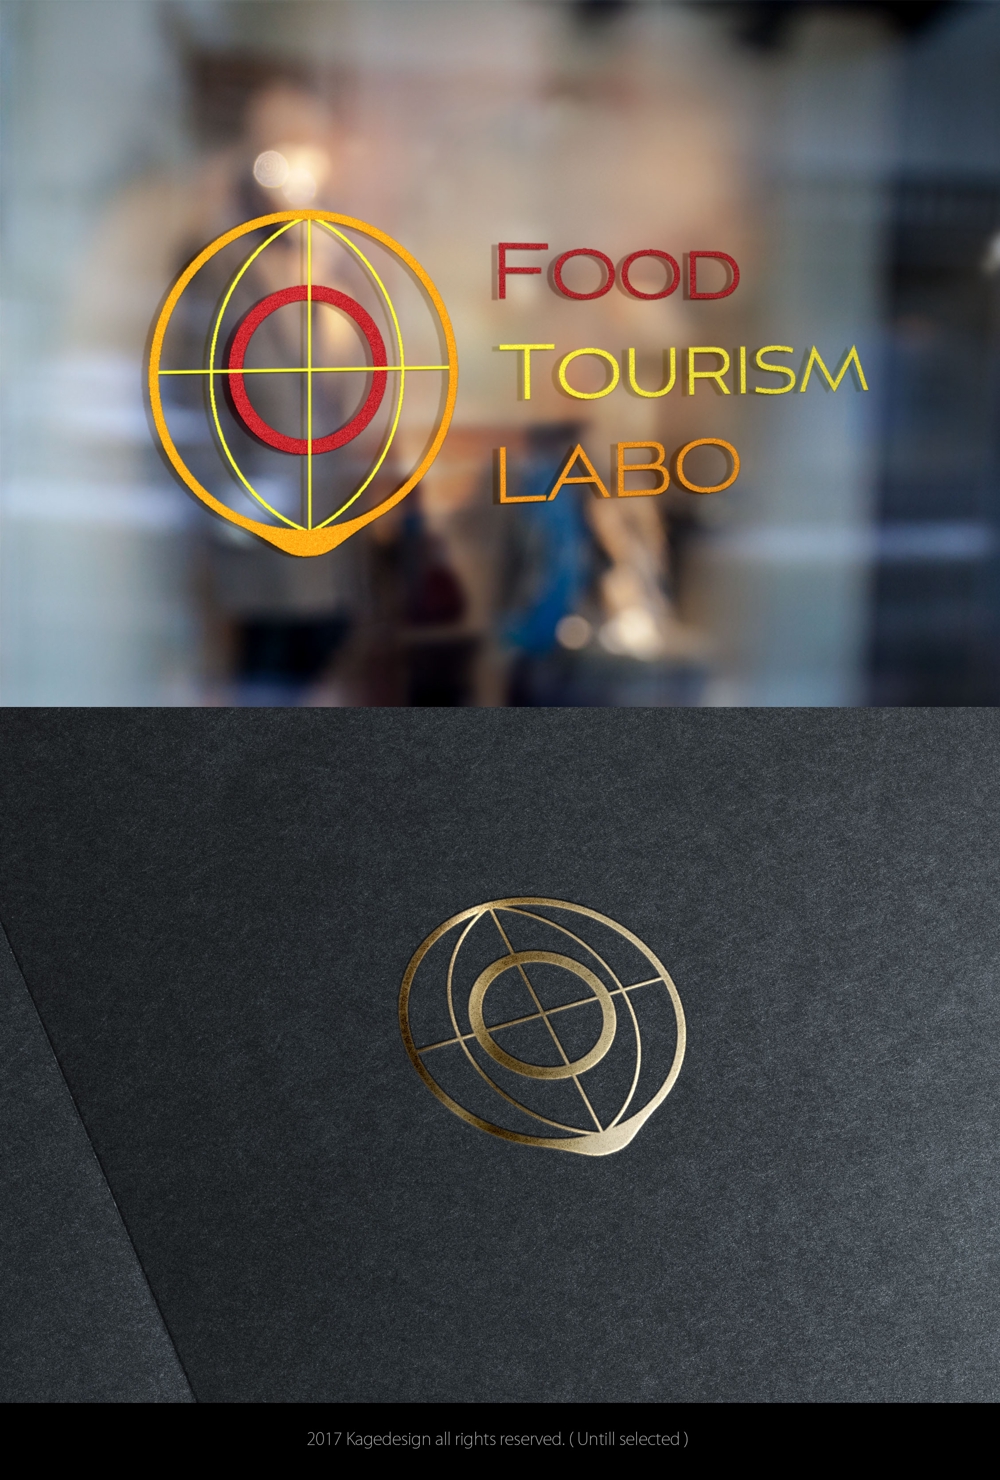 日本と世界の【食と旅】研究会【Food Tourism LABO】のロゴ